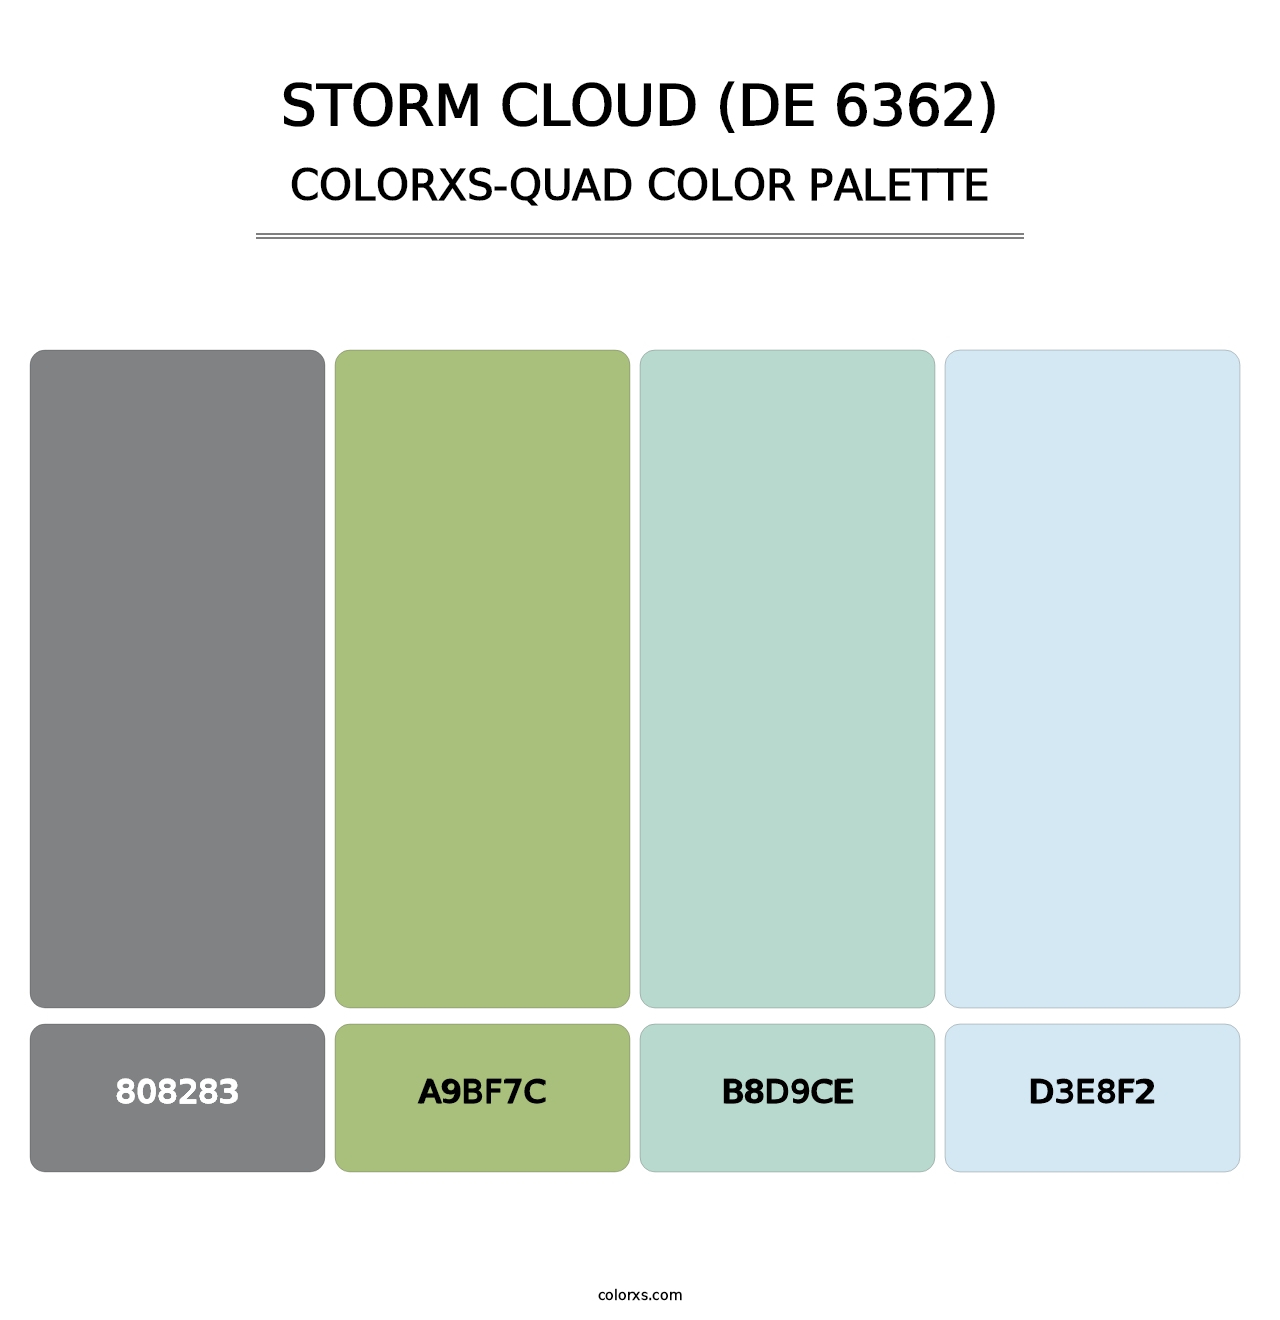 Storm Cloud (DE 6362) - Colorxs Quad Palette